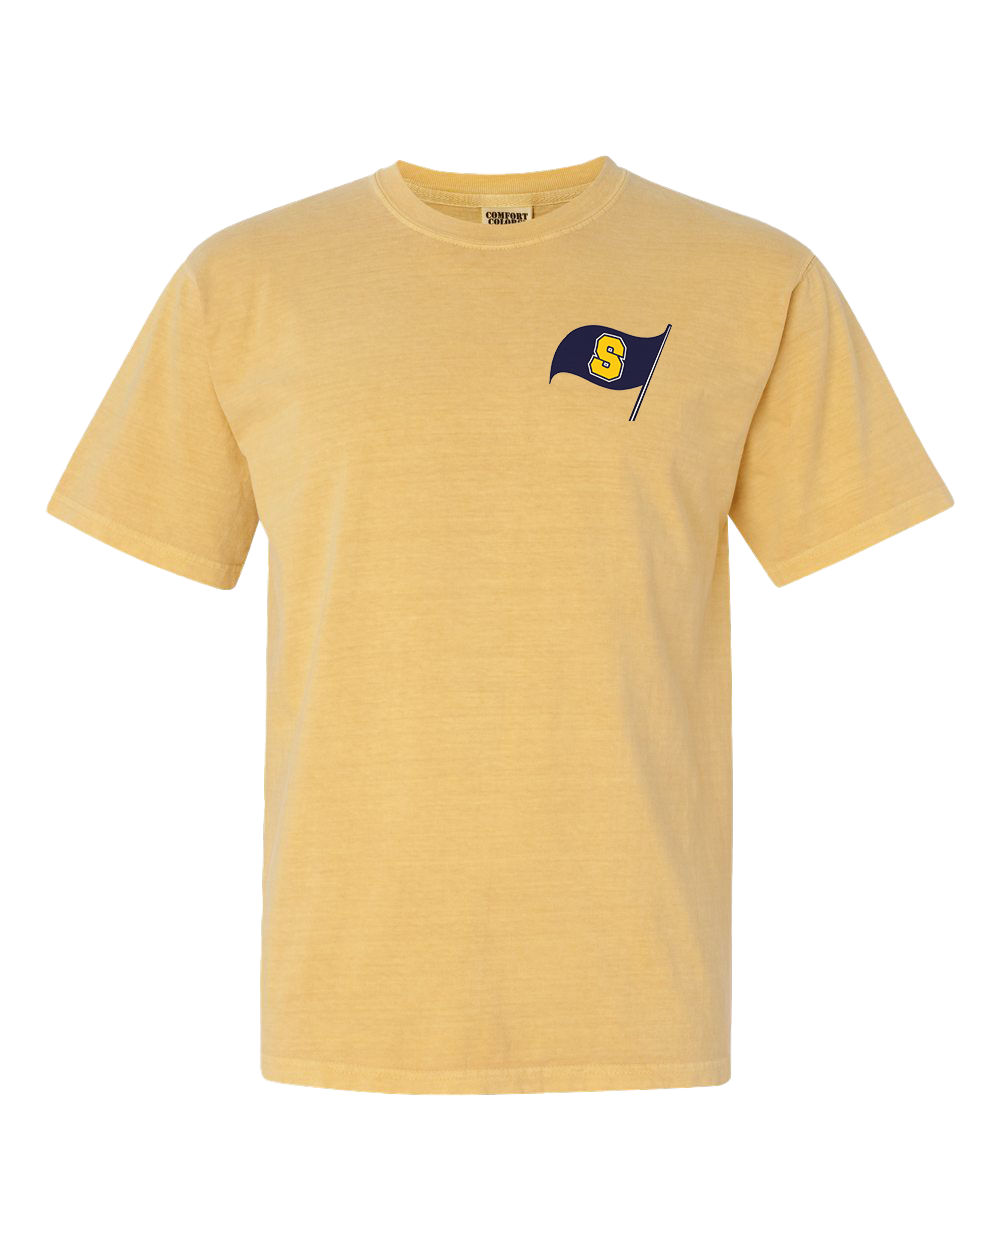 Shenandoah Raiders Heavyweight Tshirt - Mustard